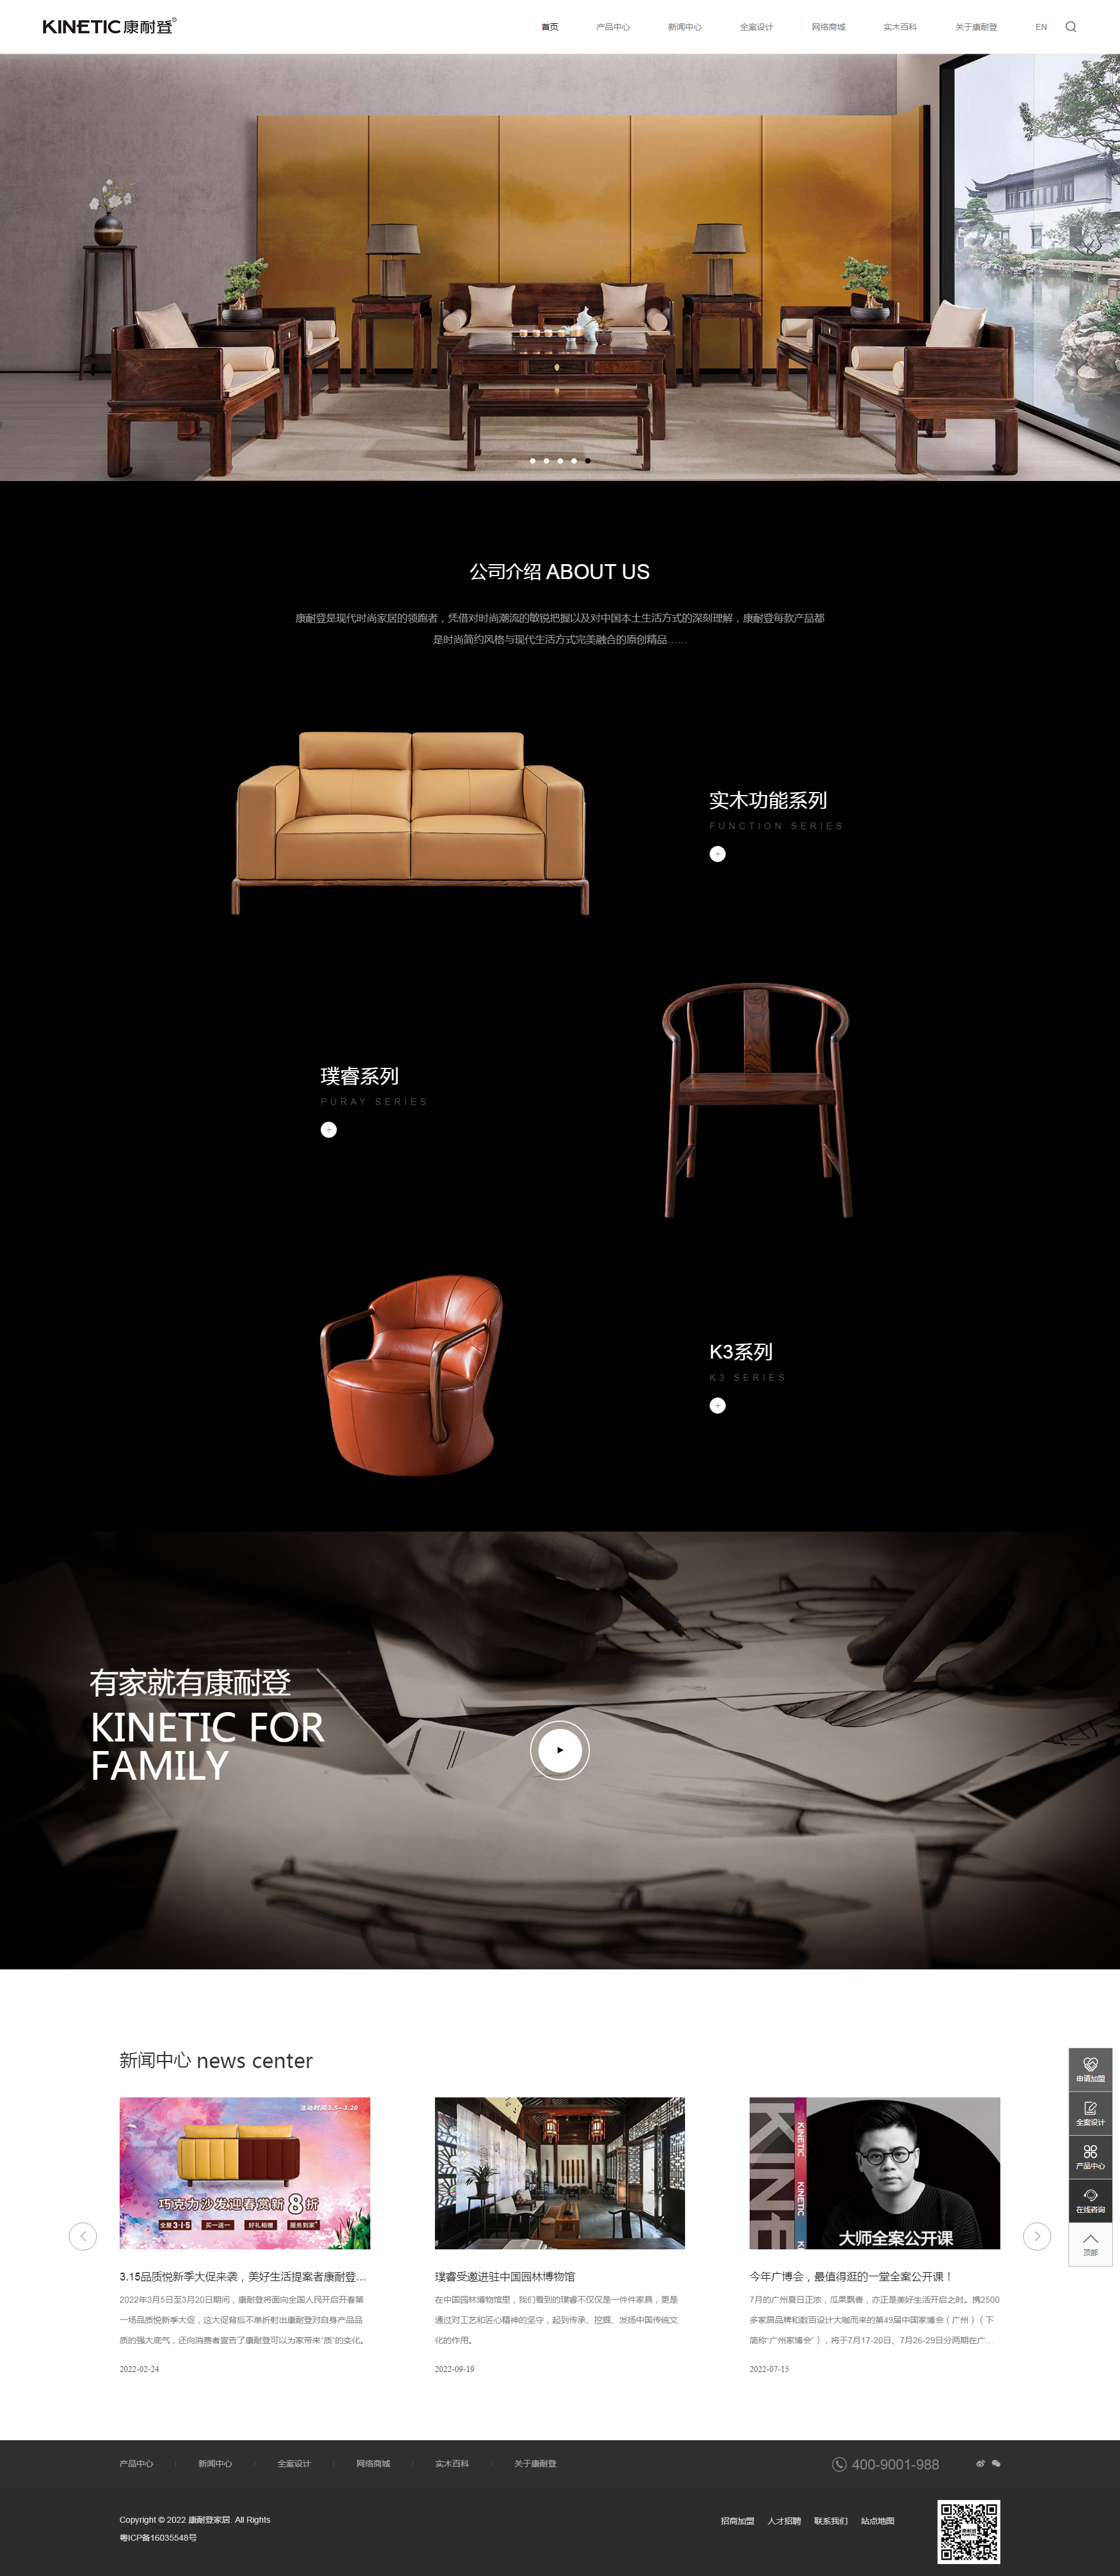 广州康耐登家居用品网站设计效果图